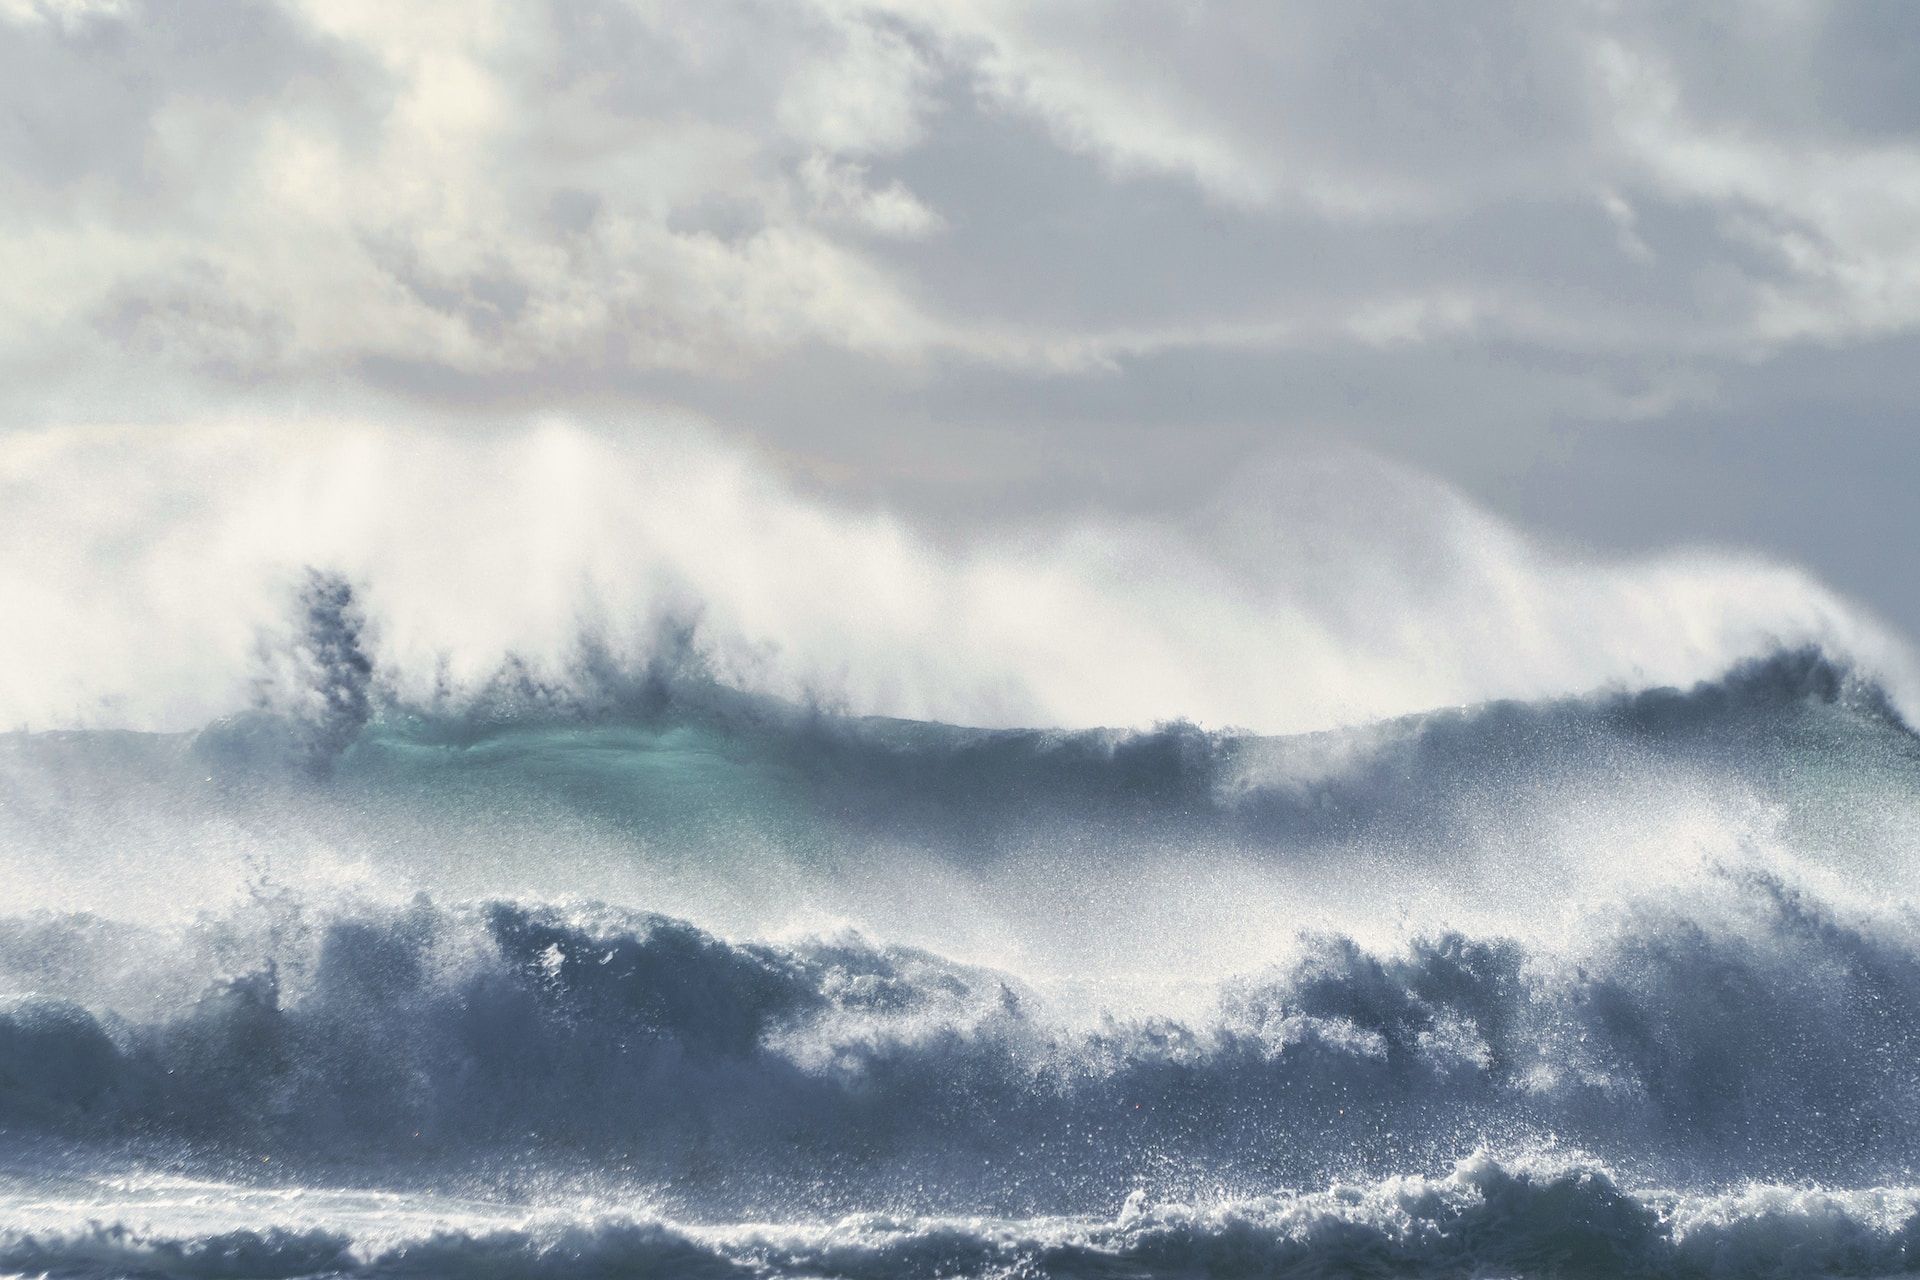 des vagues sur la mer, avec du vent - Photo by Axel Antas-Bergkvist on https://unsplash.com/fr/photos/vagues-de-locean-sous-un-ciel-nuageux-pendant-la-journee-zrSzqDnfkQ8